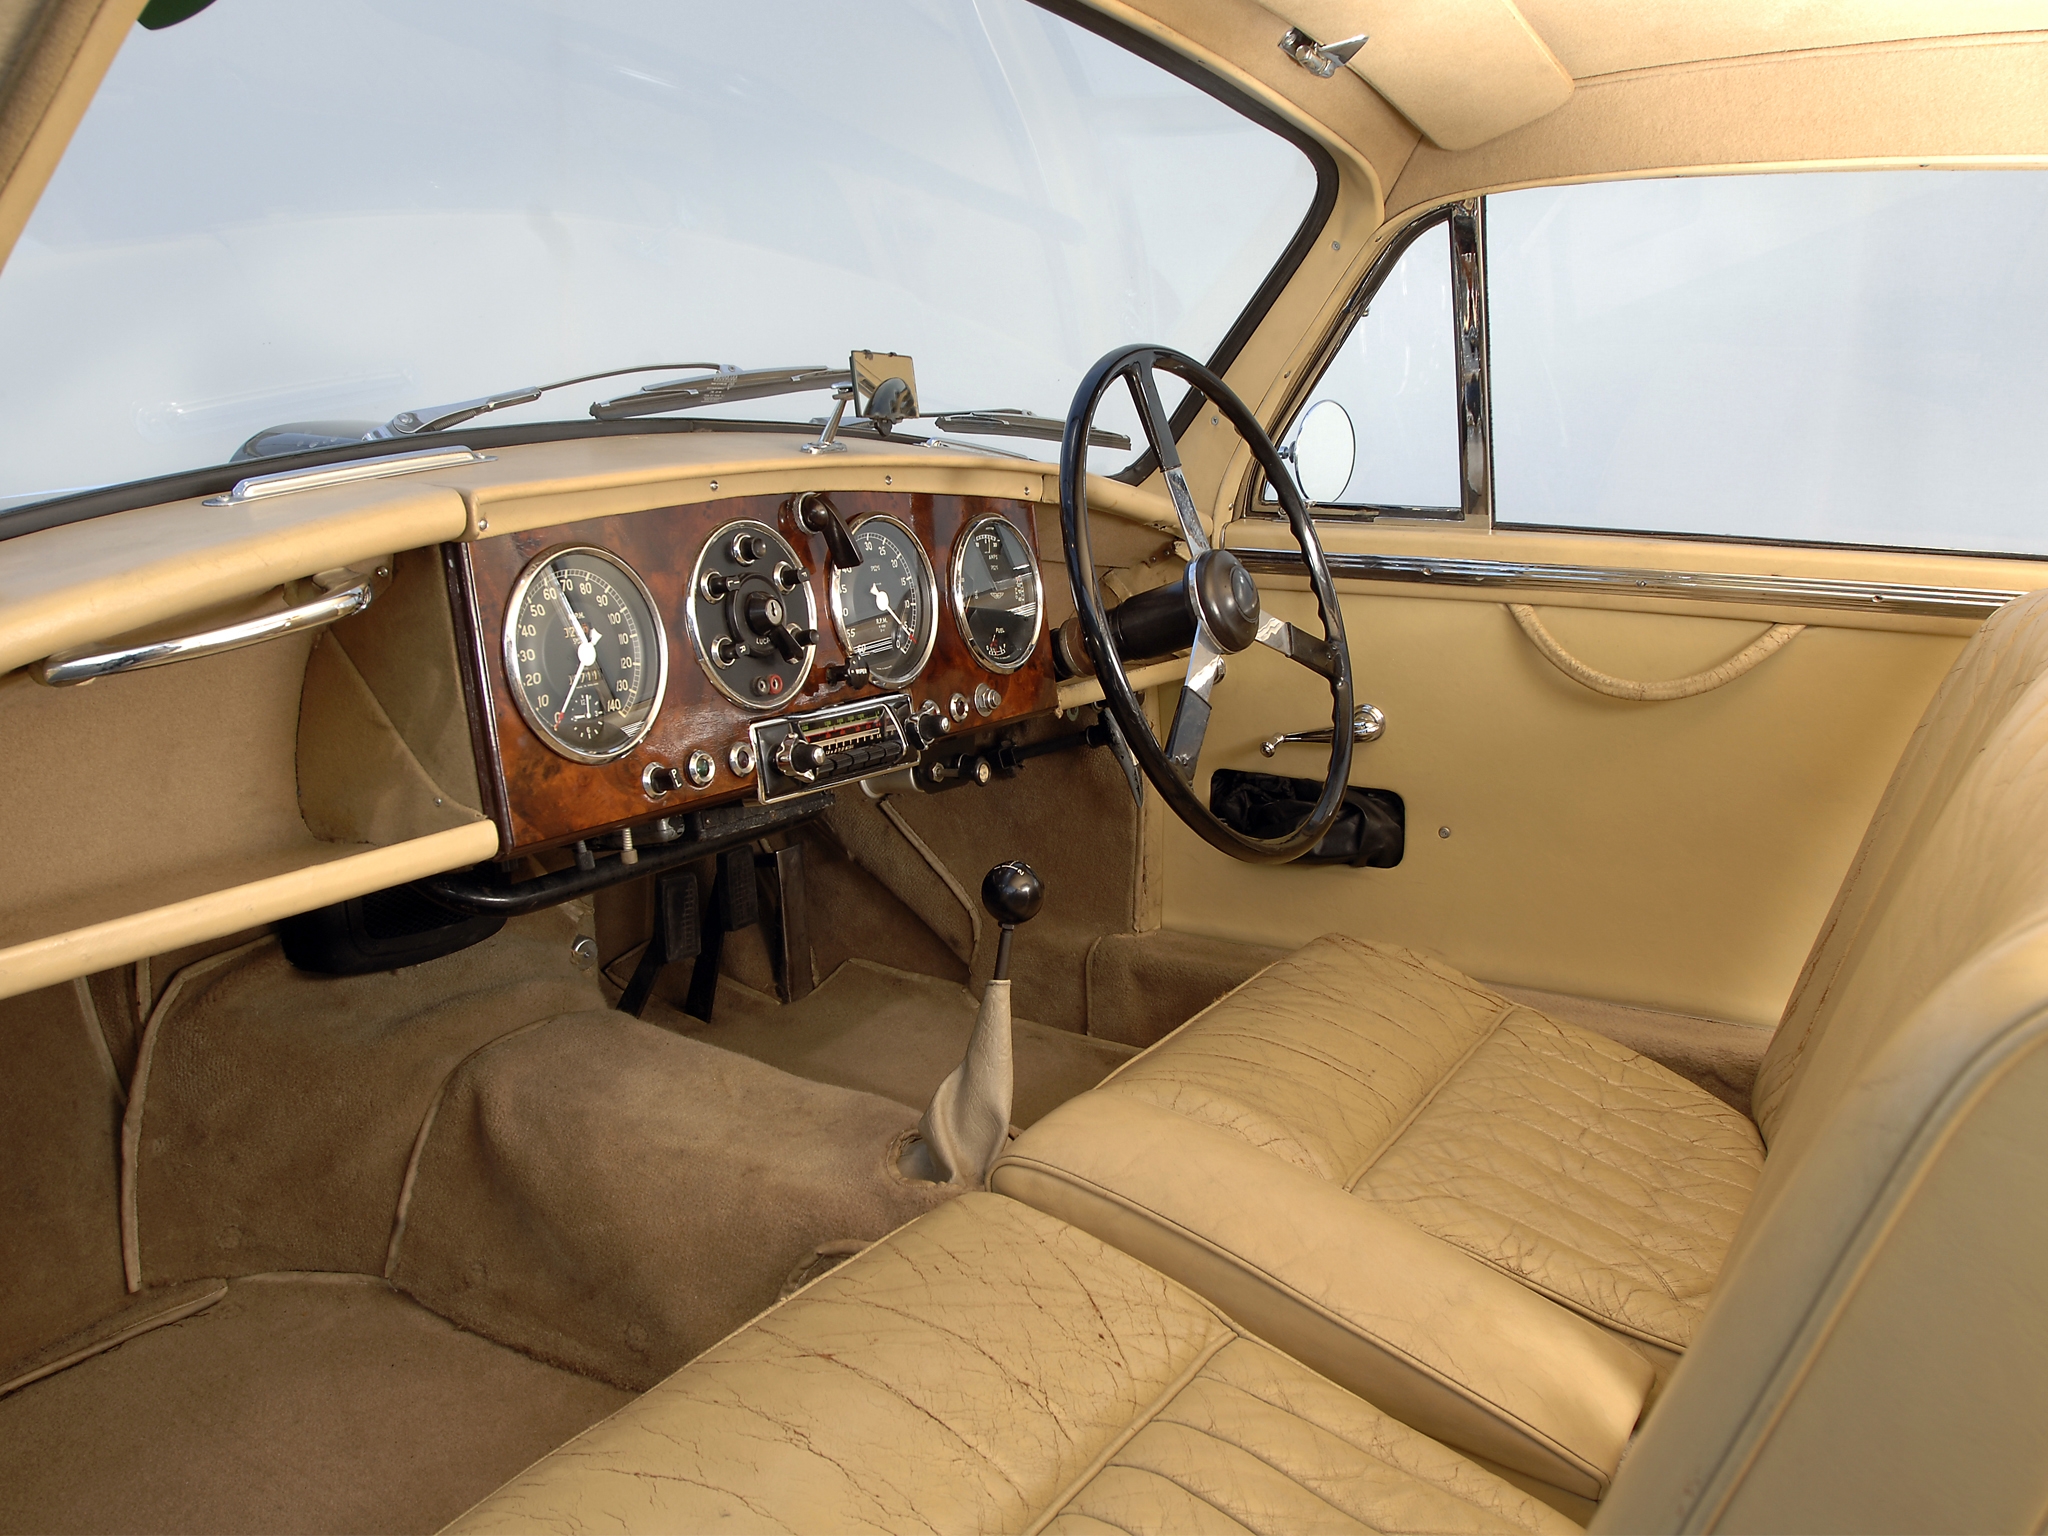 salon, interior, aston martin, cars, retro, steering wheel, rudder, speedometer, beige, 1950